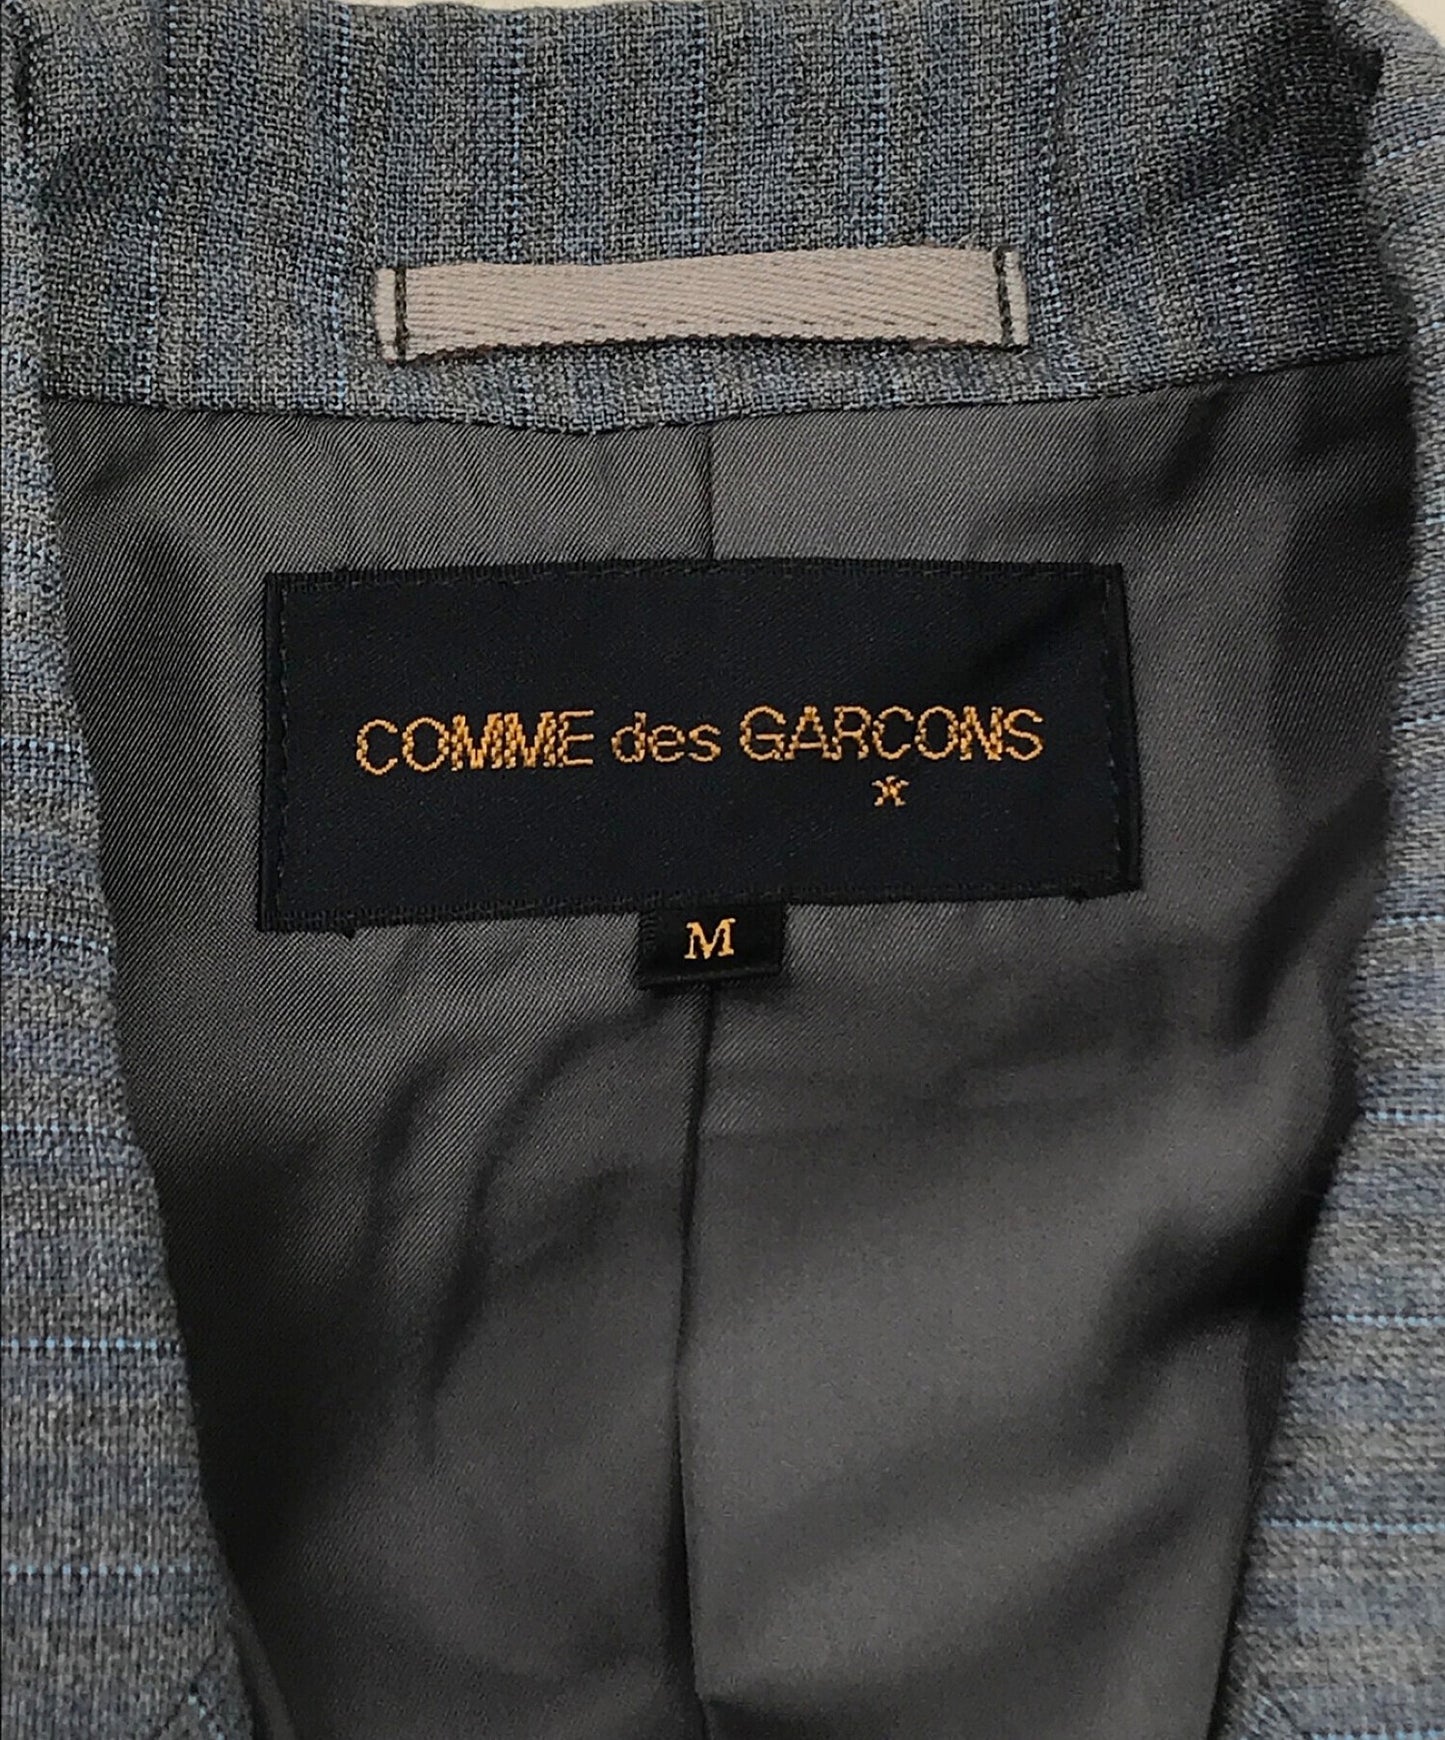 Comme des Garcons长夹克GJ-04013M